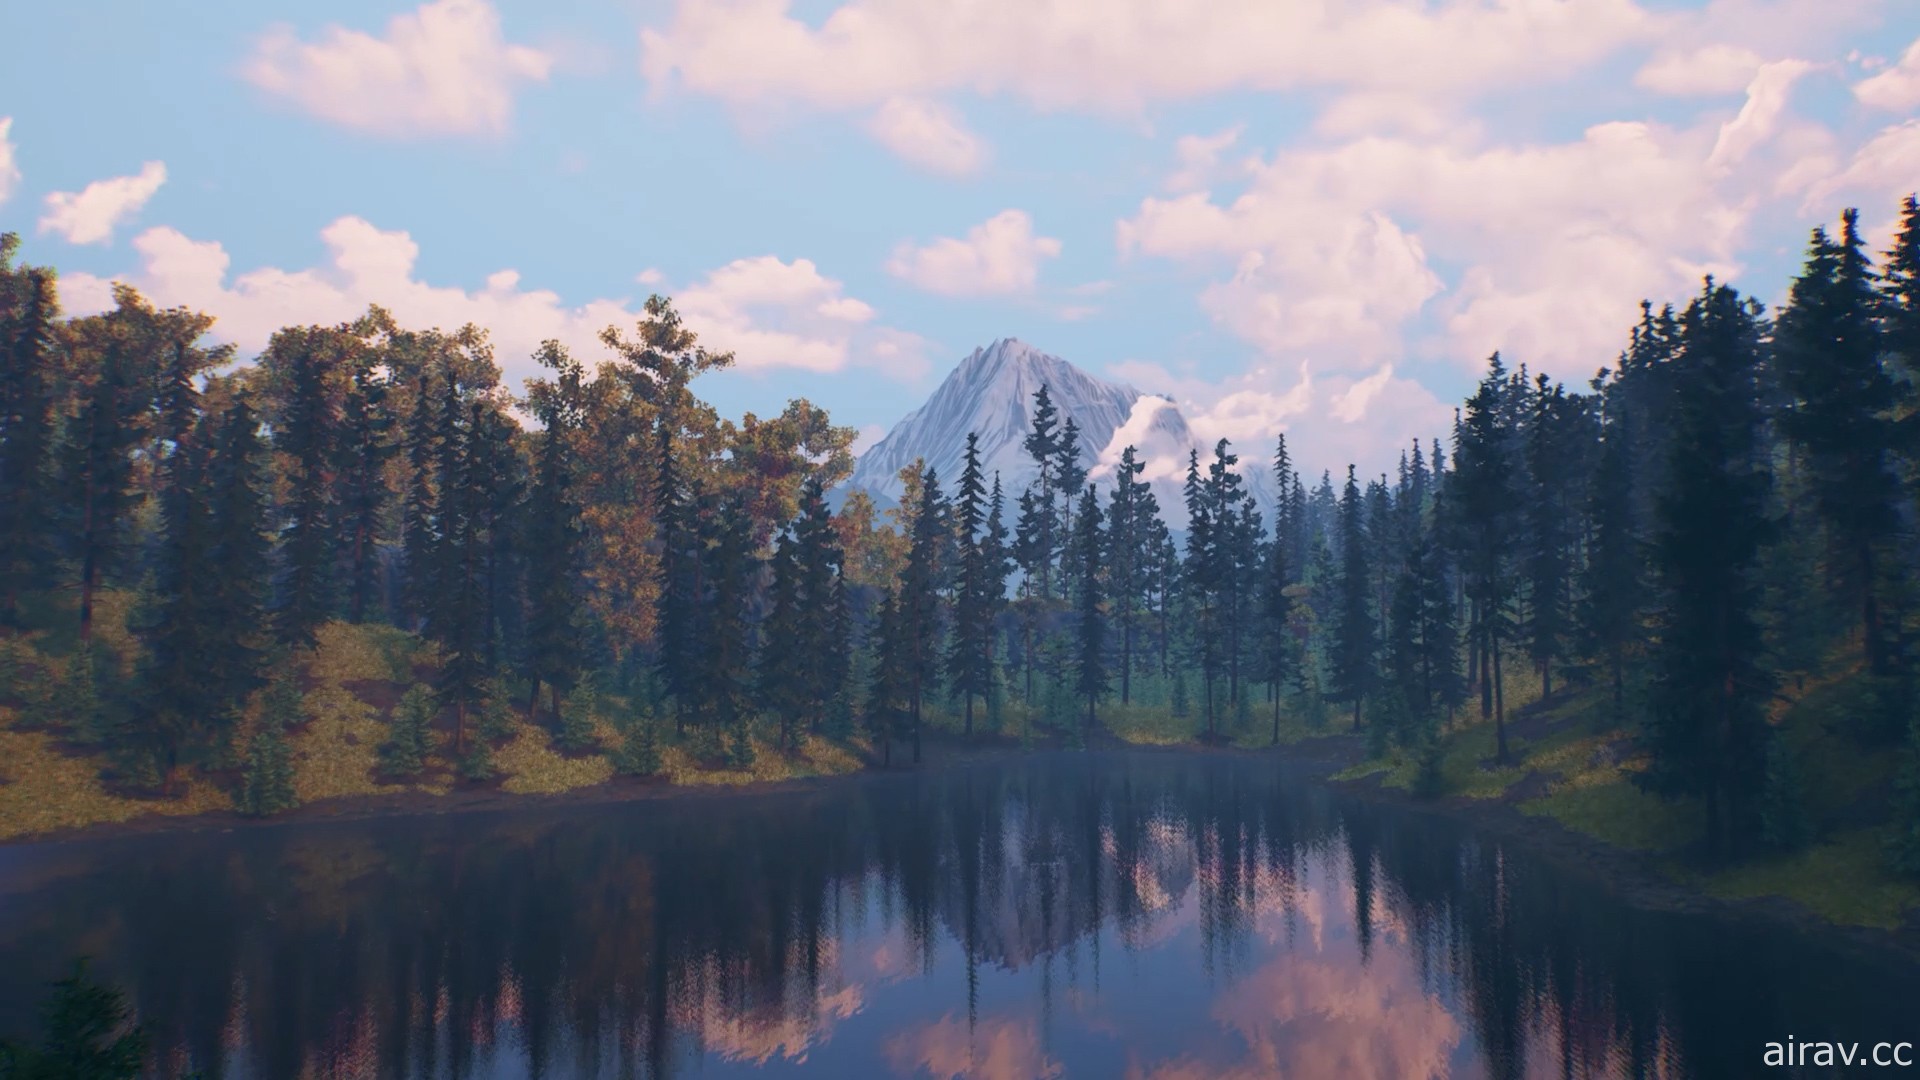 荒野生存冒險新作《遼闊荒野》釋出野外求生預告影片 遊戲 6 月初發售